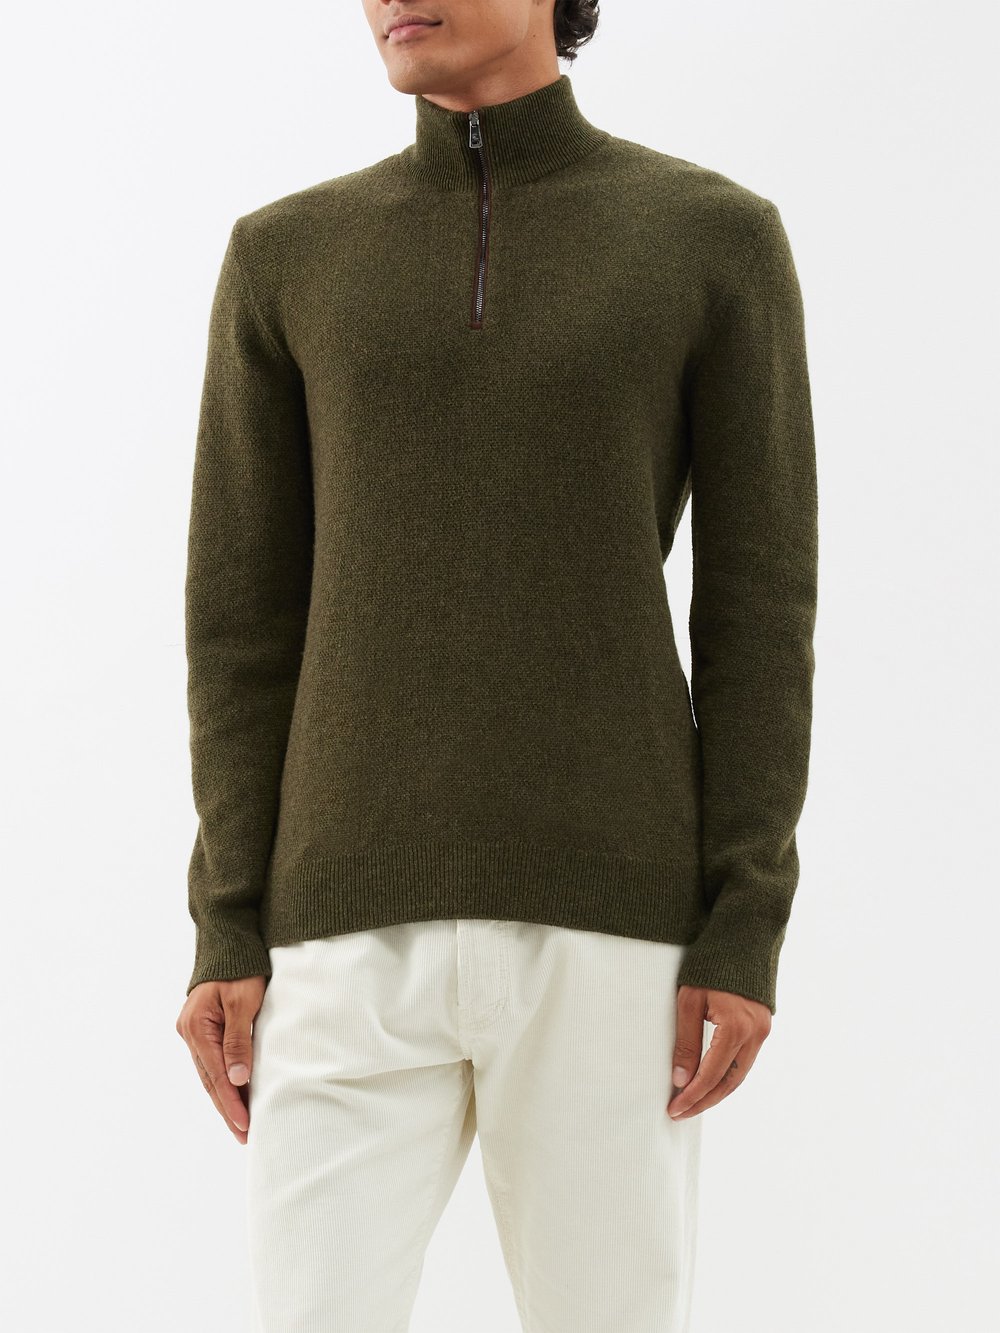 Кашемировый свитер с высоким воротником и застежкой четверть молнии Ralph Lauren, зеленый пуховик премиум класса bershka цвета хаки